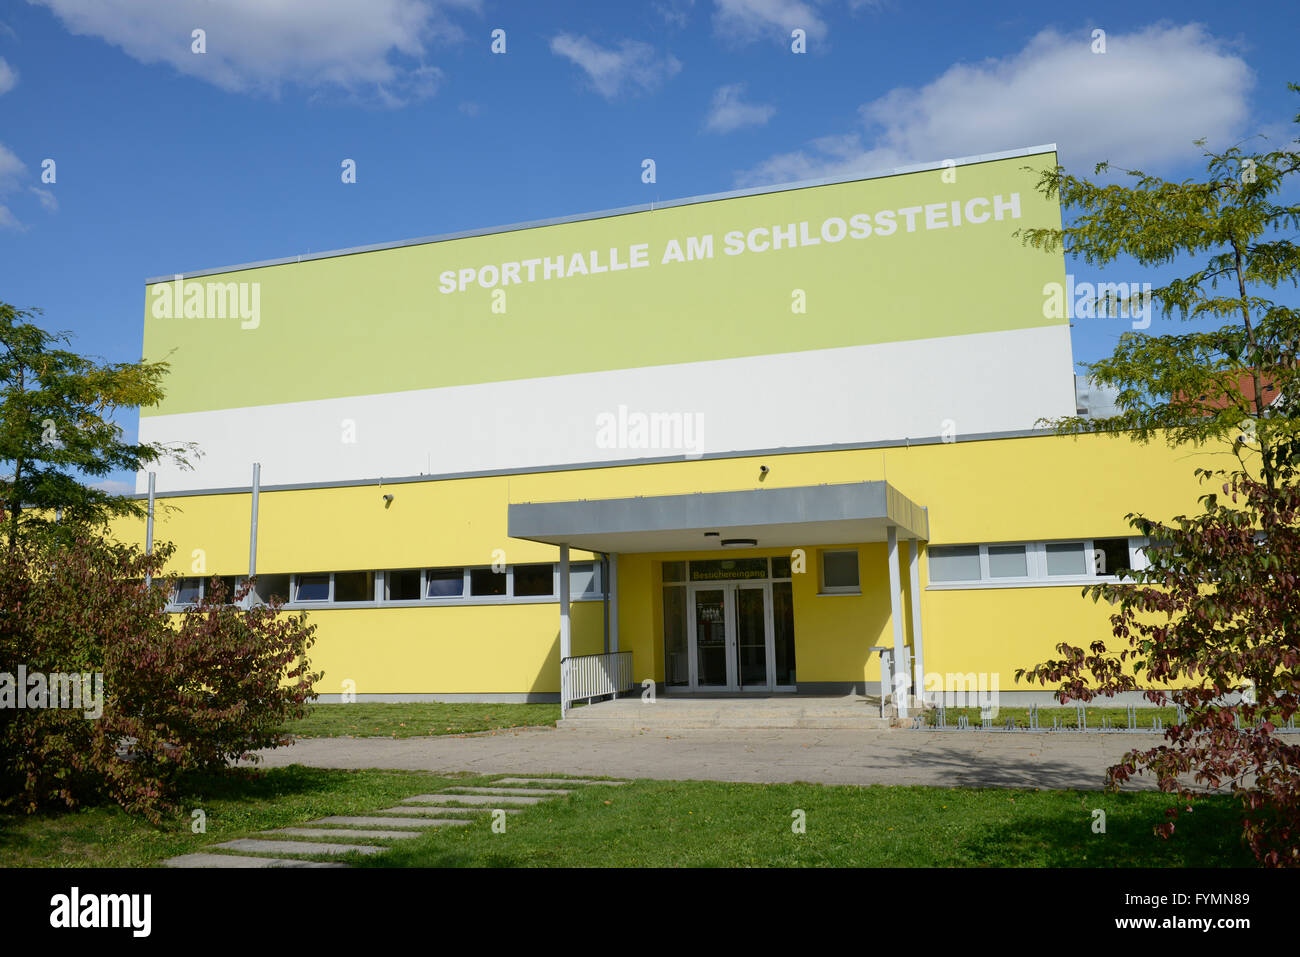 Sporthalle am Schlossteich, Chemnitz, Sachsen, Deutschland Stock Photo